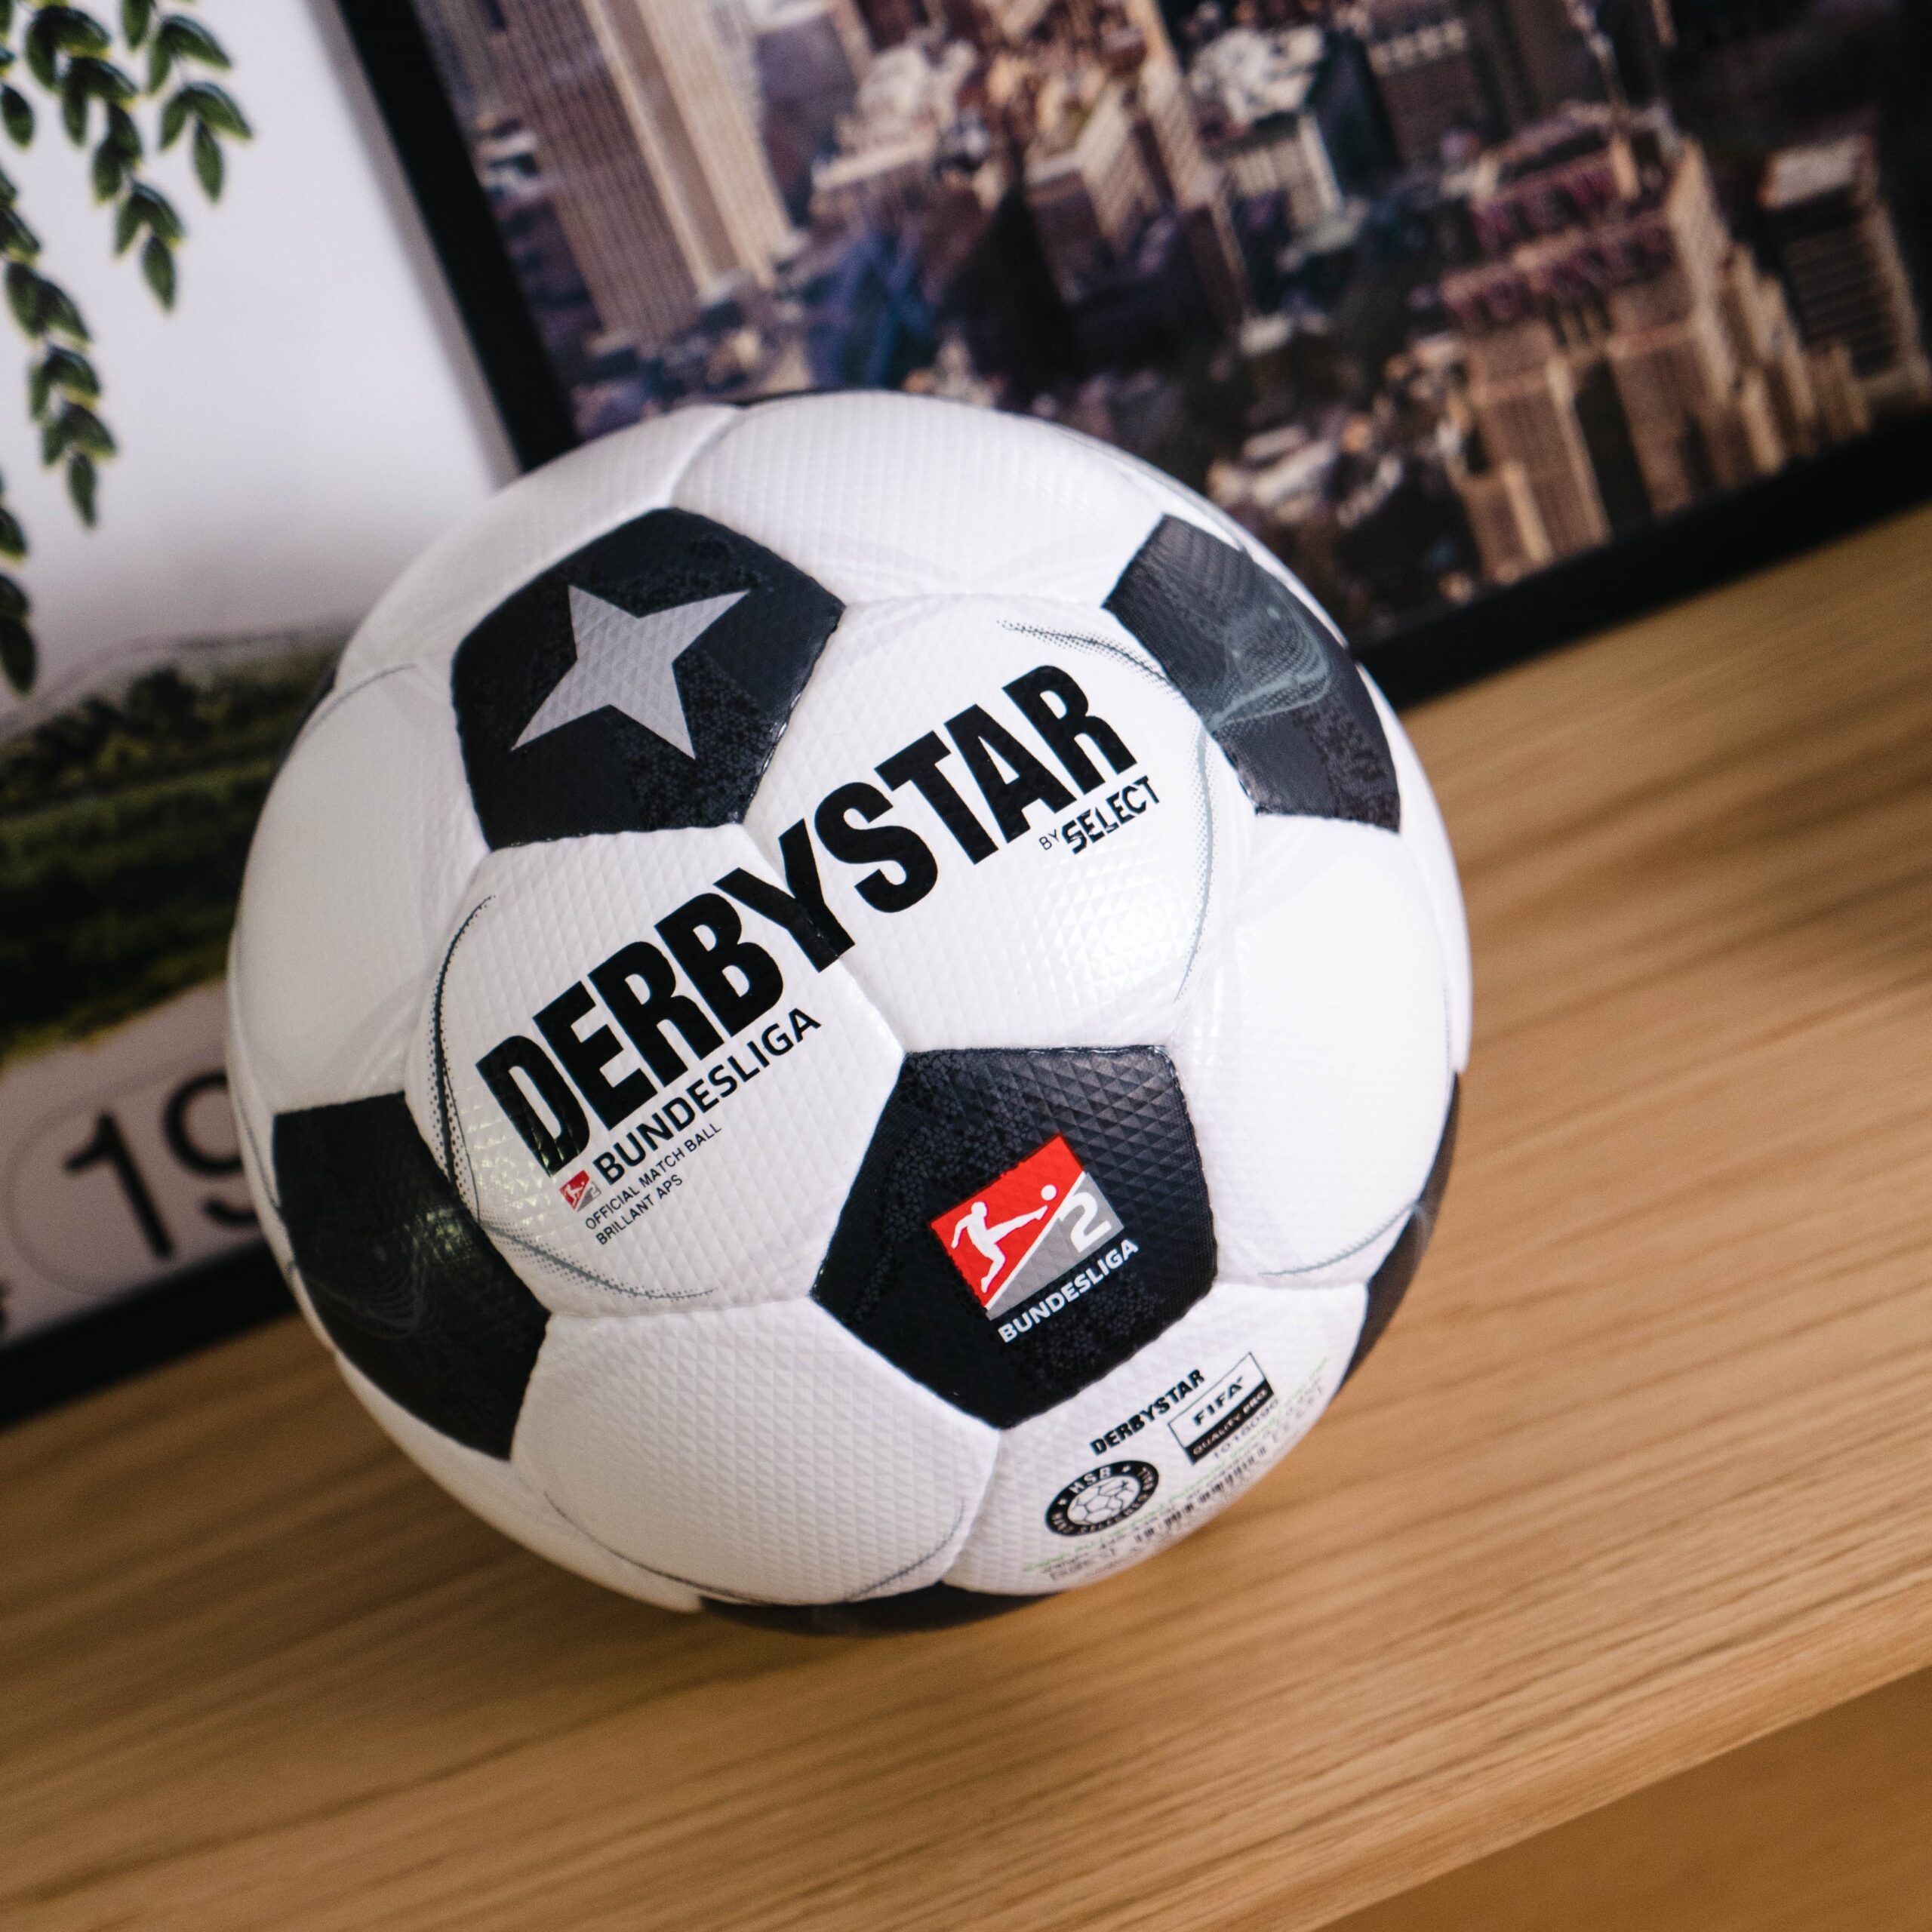 Derbystar Jubiläumsball 2. Bundesliga